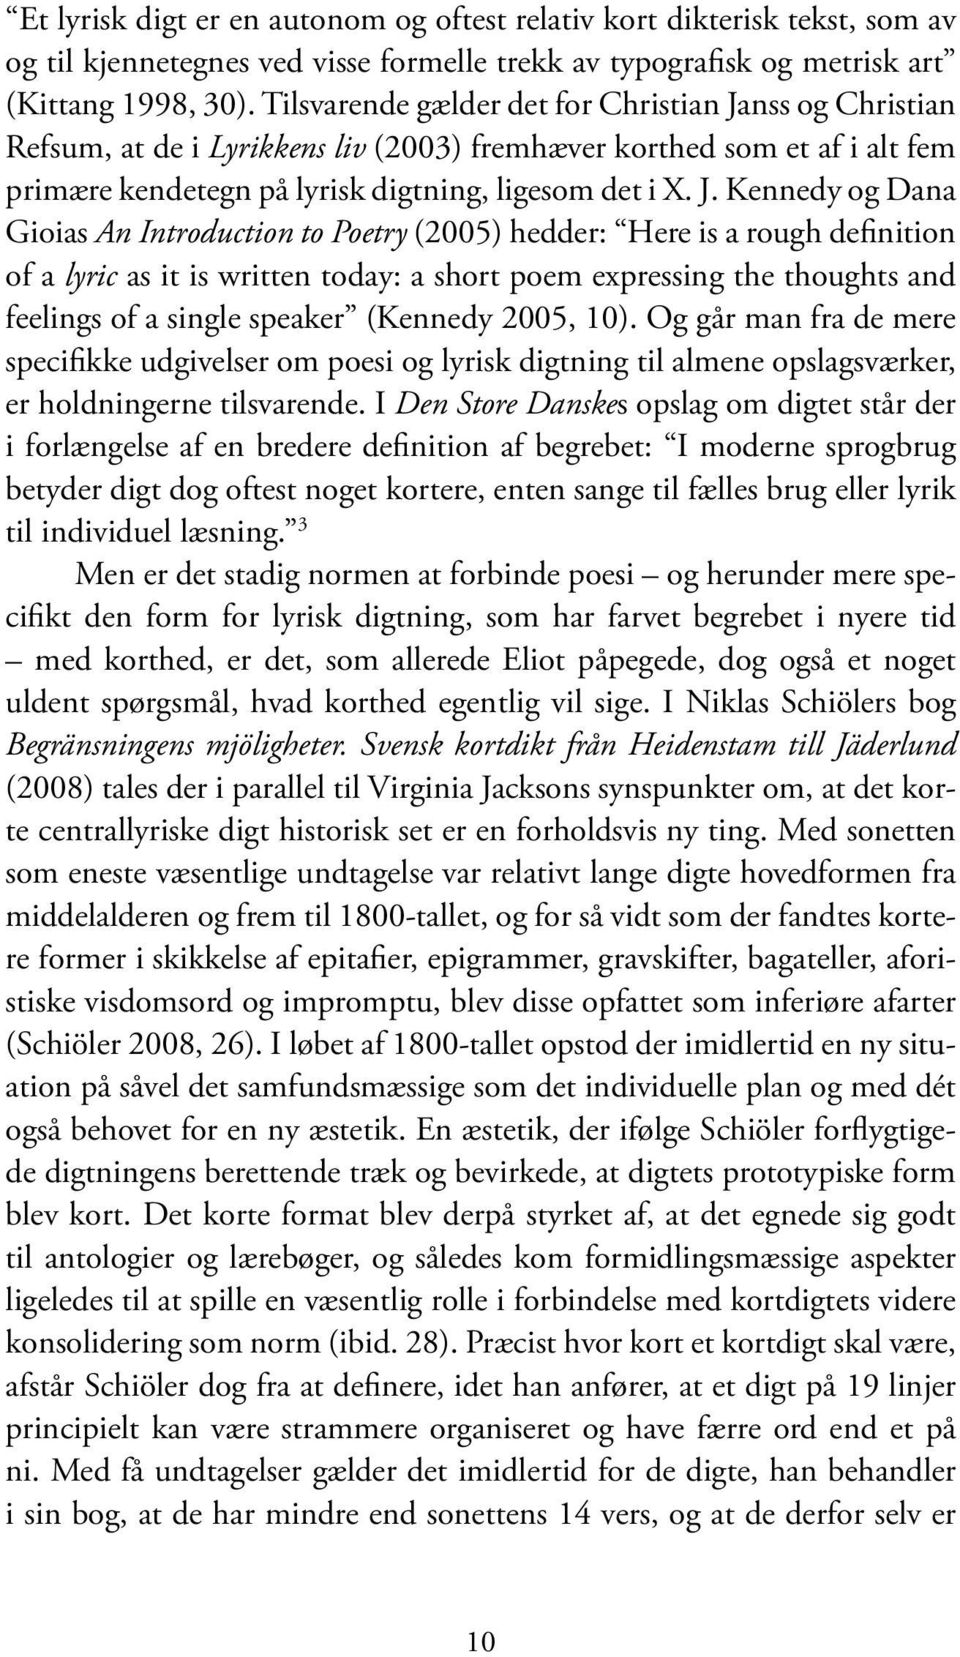 nss og Christian Refsum, at de i Lyrikkens liv (2003) fremhæver korthed som et af i alt fem primære kendetegn på lyrisk digtning, ligesom det i X. J.